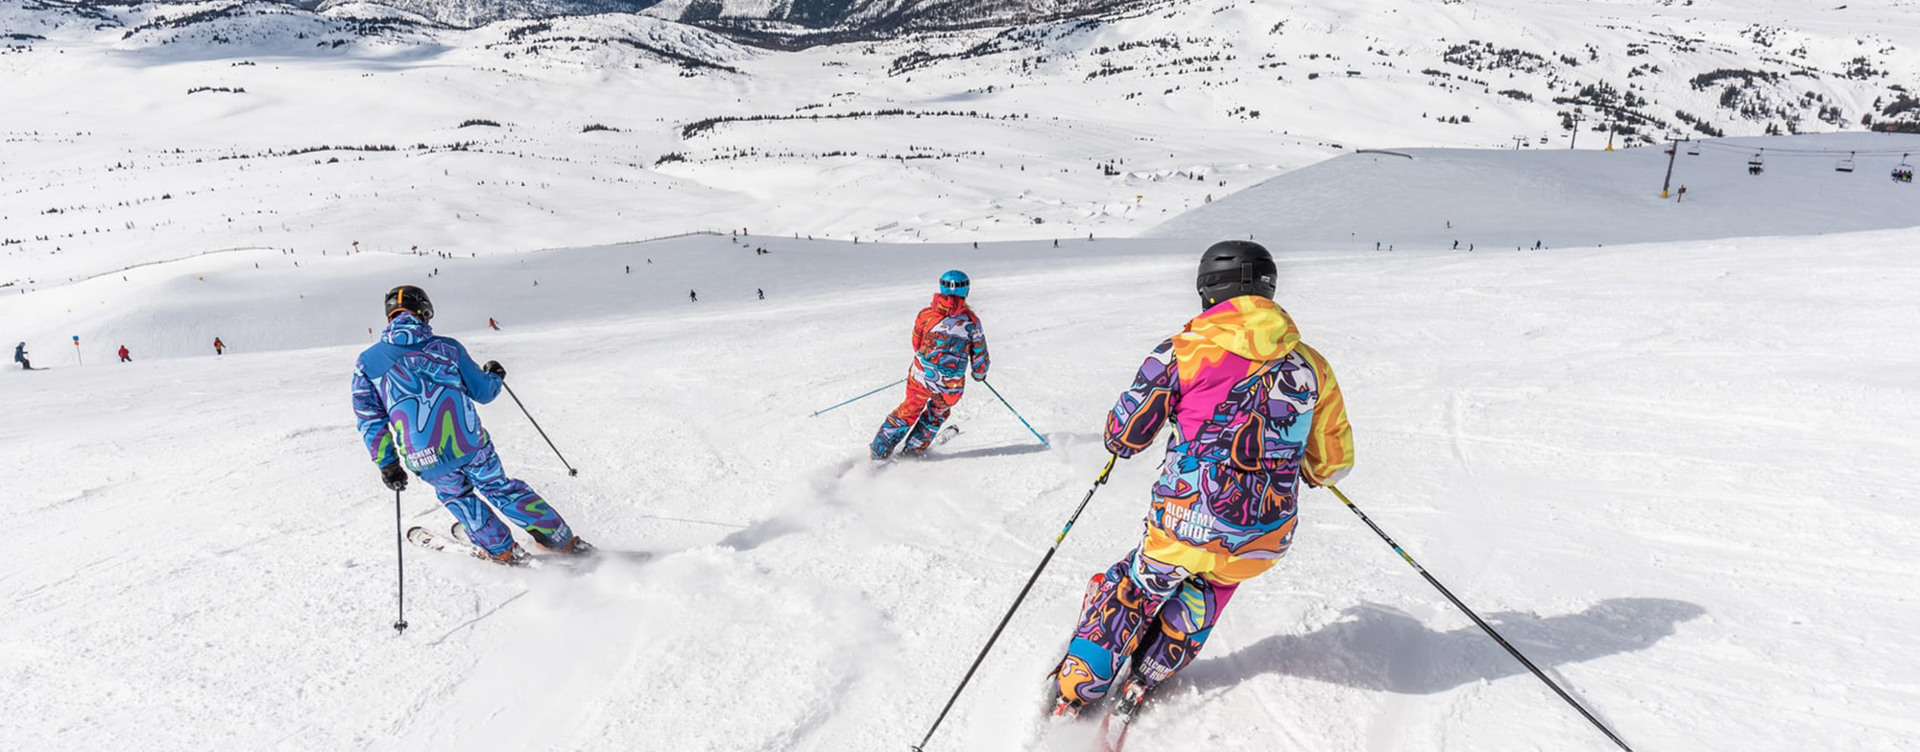 Beleef de leukste winterse activiteiten in de Franse Alpen